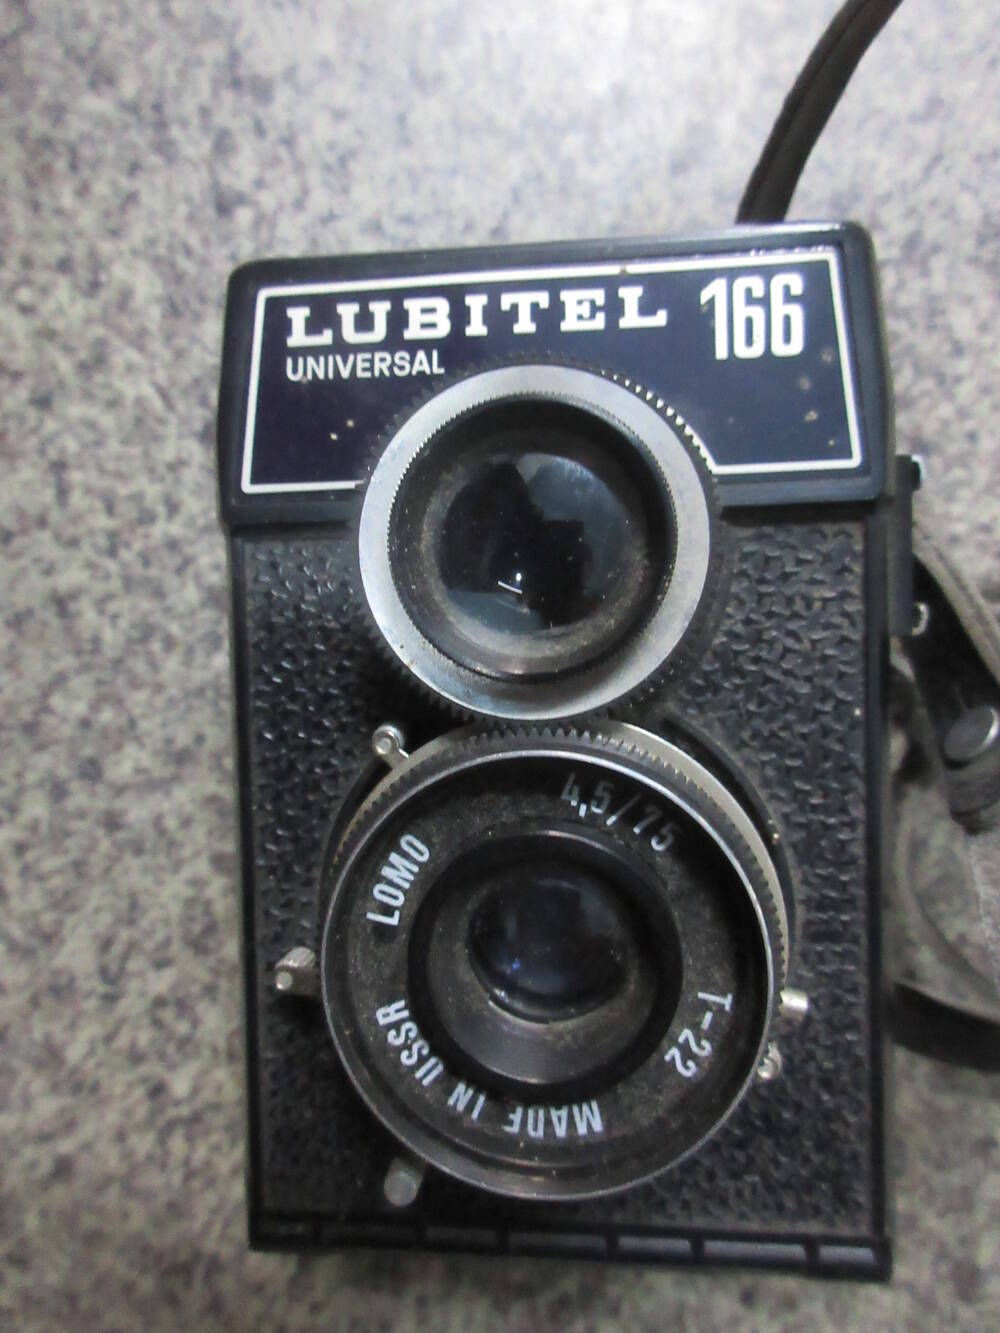 Фотоаппарат Lubitel Universal 166